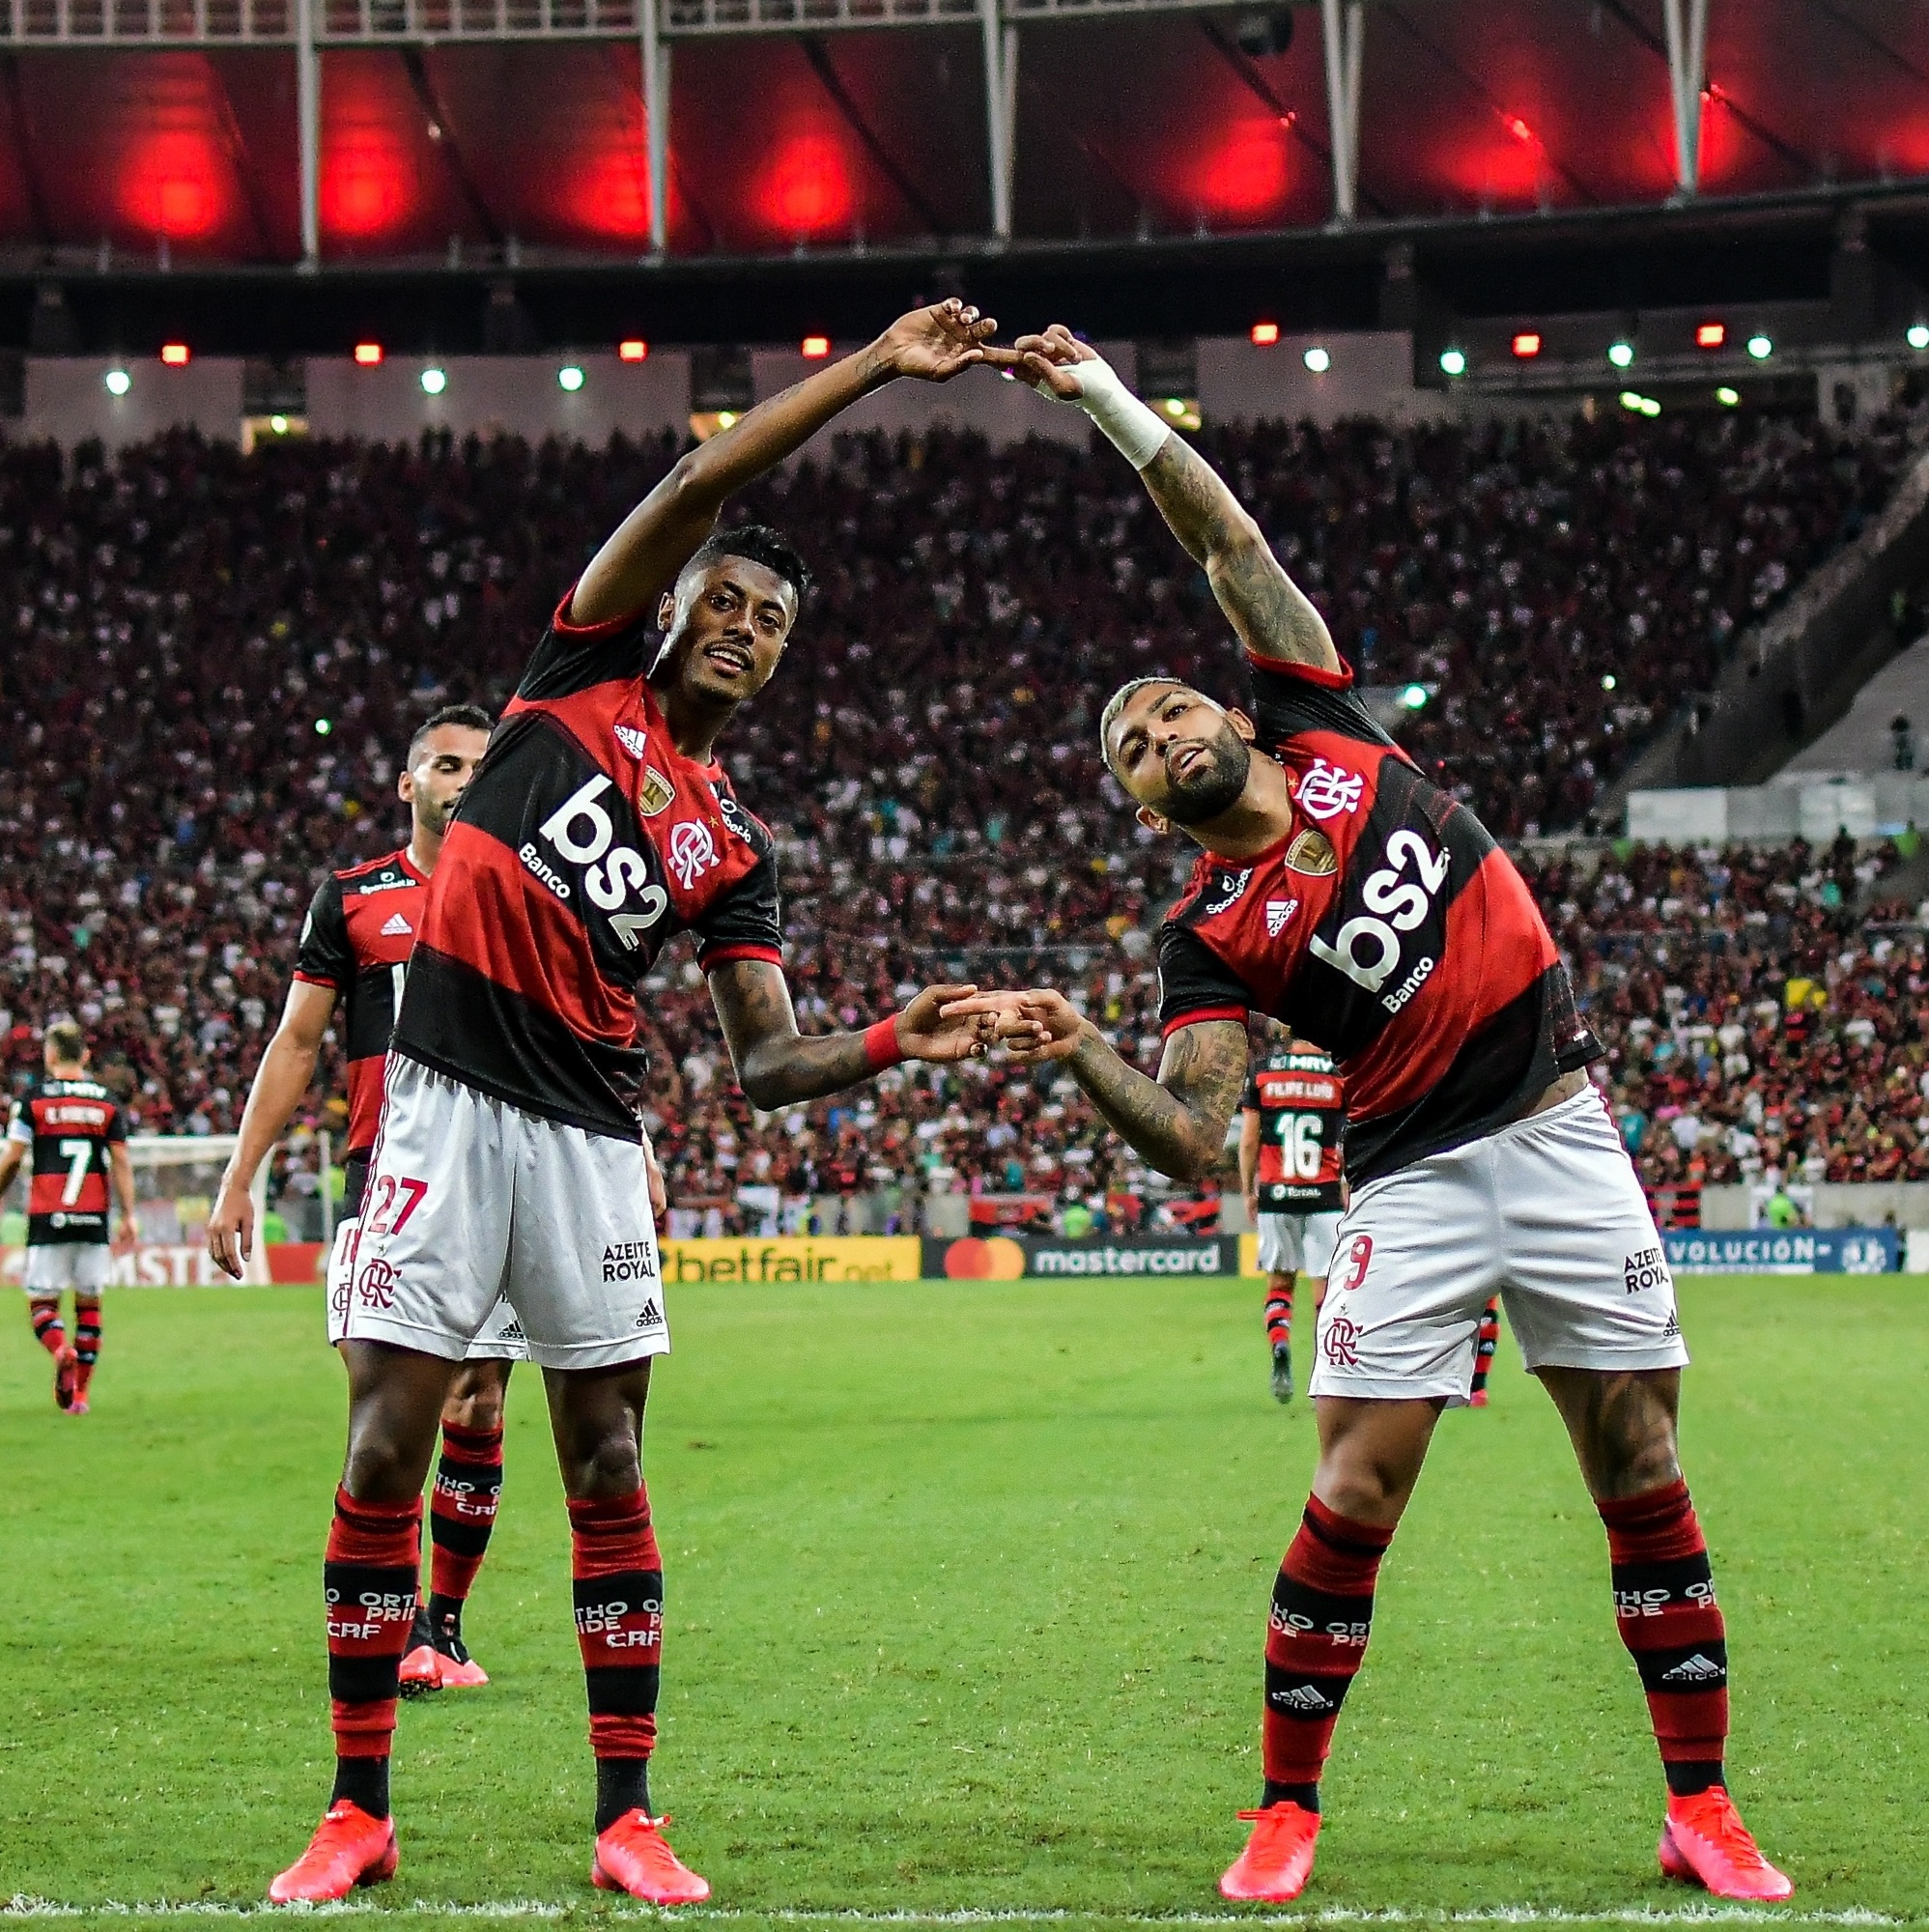 Transmissão de jogo do Flamengo na Internet causa impacto na rede